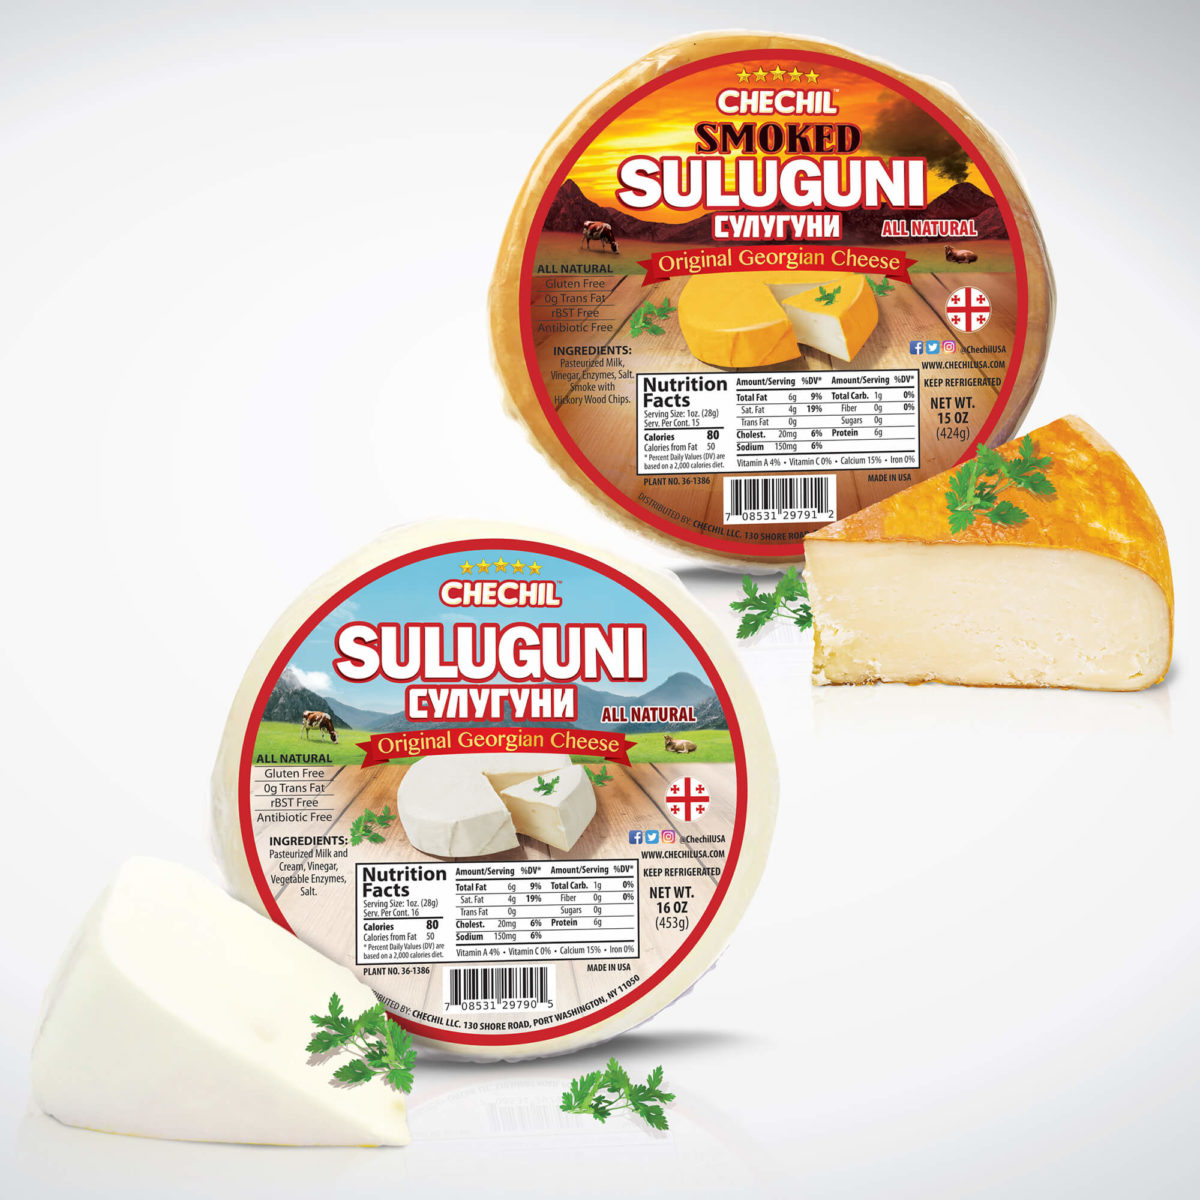 Chechil Suluguni Cheese